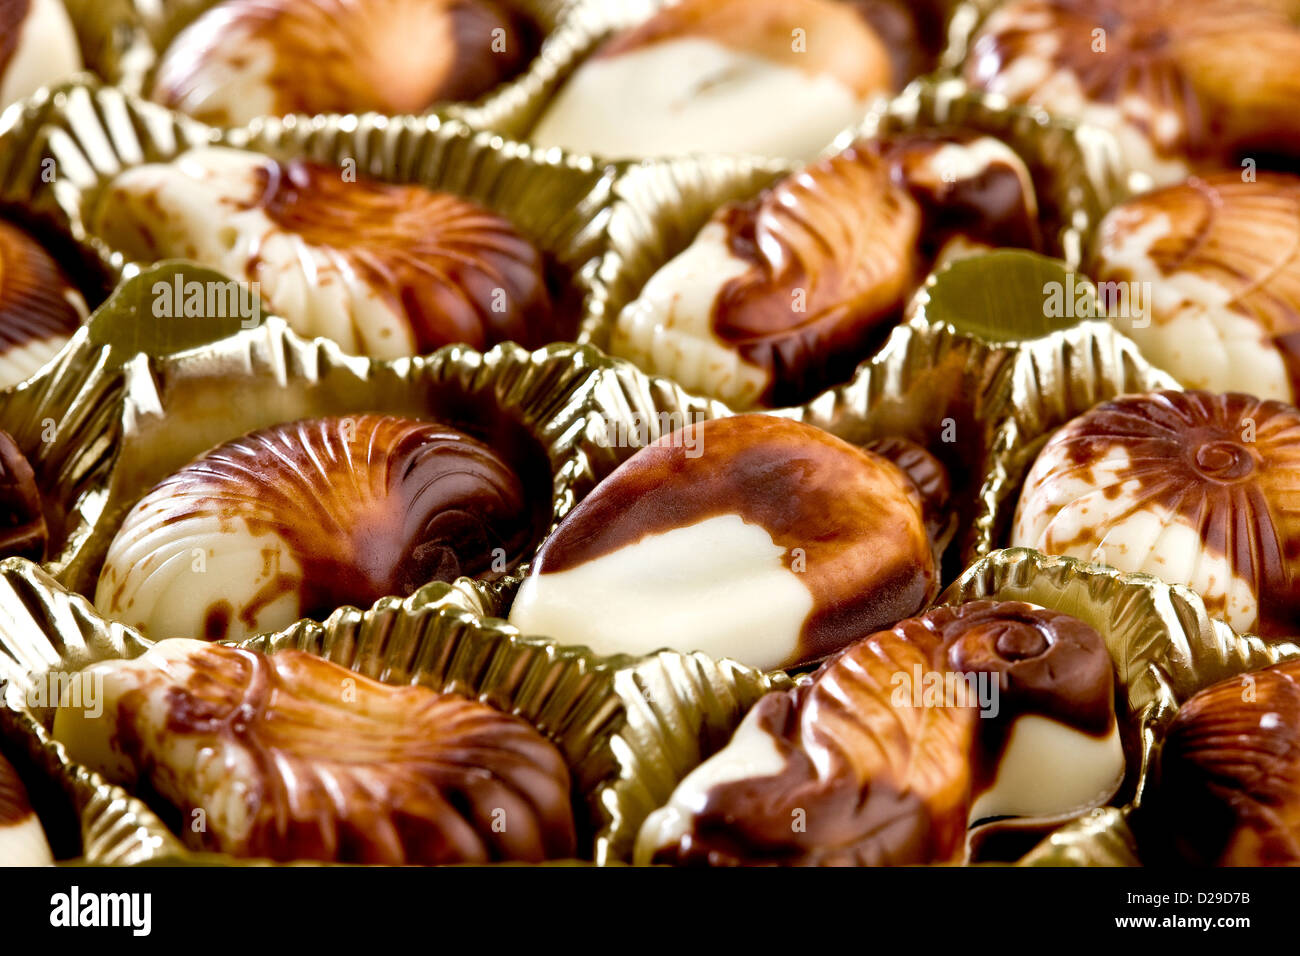 Belgian chocolate seashells Stock Photo